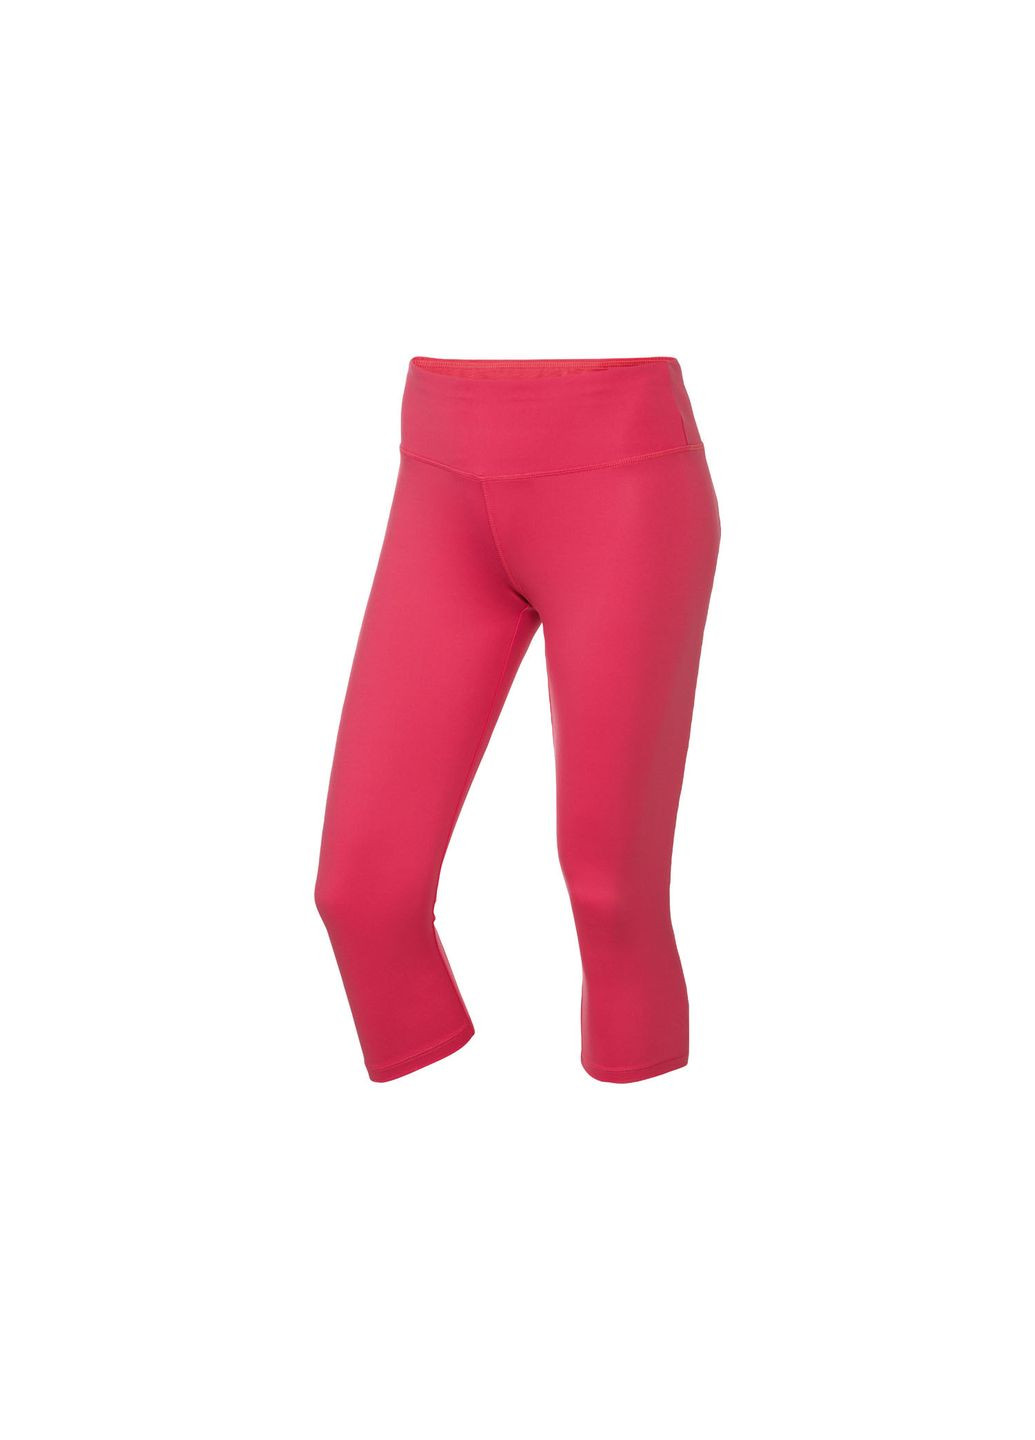 Розовые демисезонные спортивные леггинсы с быстросохнущей ткани для женщины 371729 Crivit